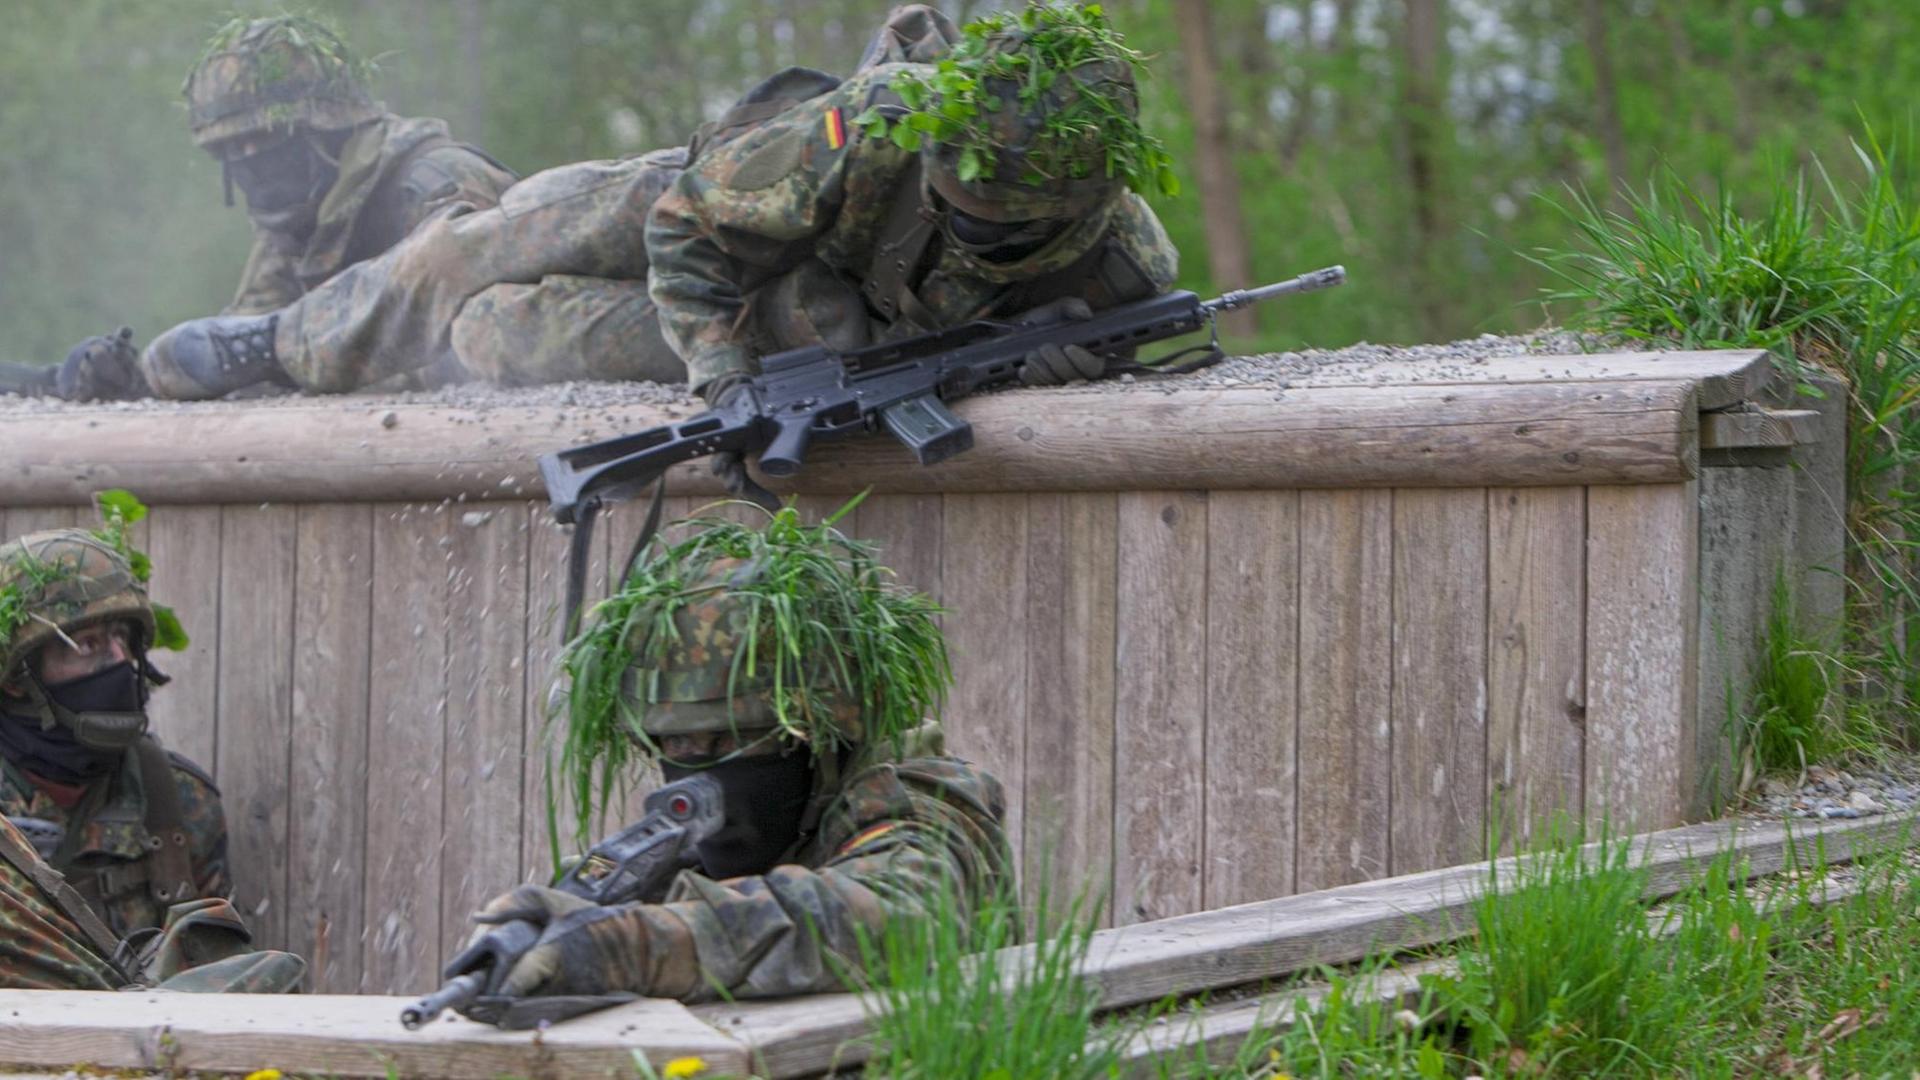 Bewaffnete Soldaten der Bundeswehr in Tarnuniform überwinden ein Hindernis bei einer Übung.